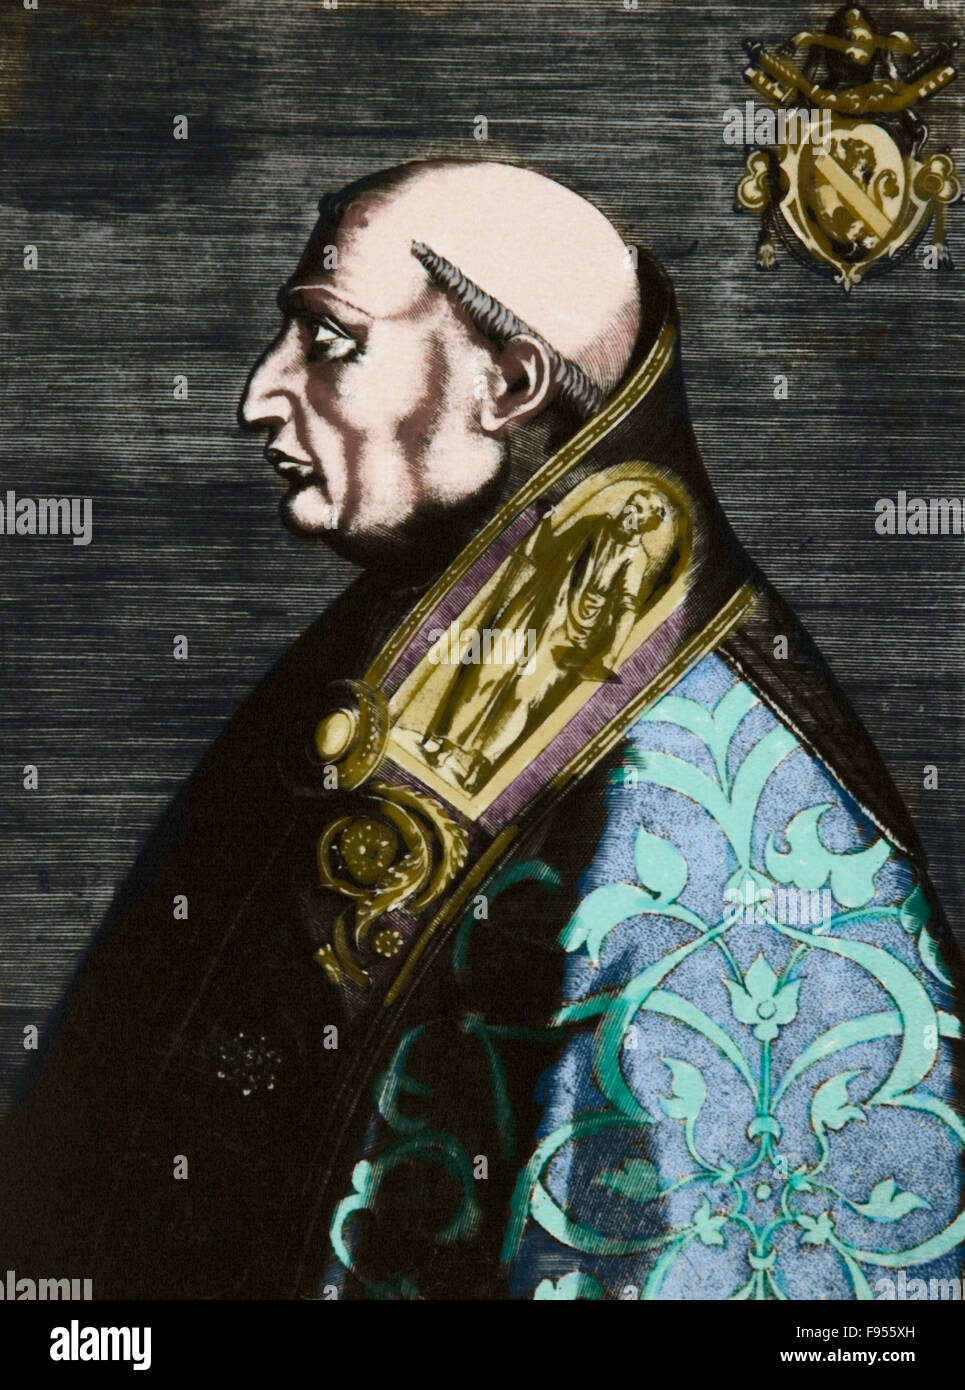 Papst Paul II. (1417-1471). Geboren Pietro Barbo. Papst von 1464-1471. Porträt. Gravur. Farbige. Stockfoto